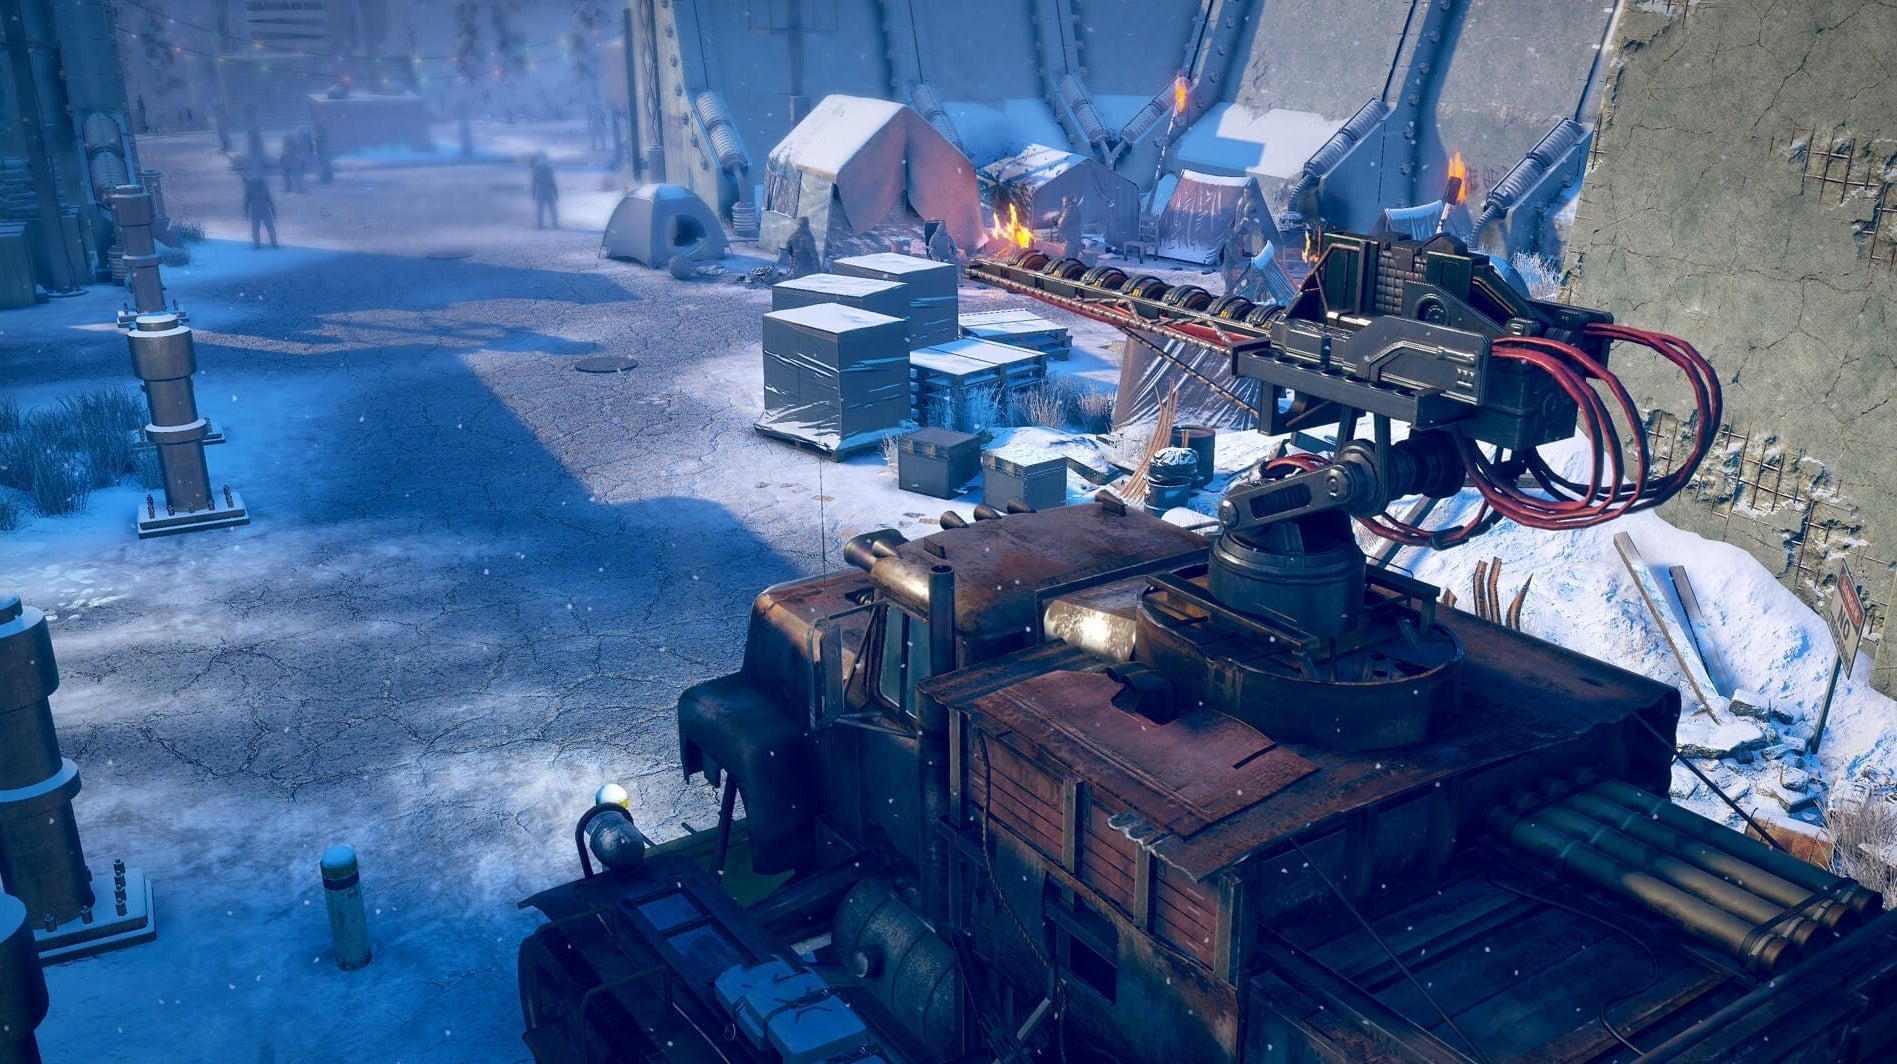 Immagine di Wasteland 3 in azione in ben 40 minuti di video gameplay